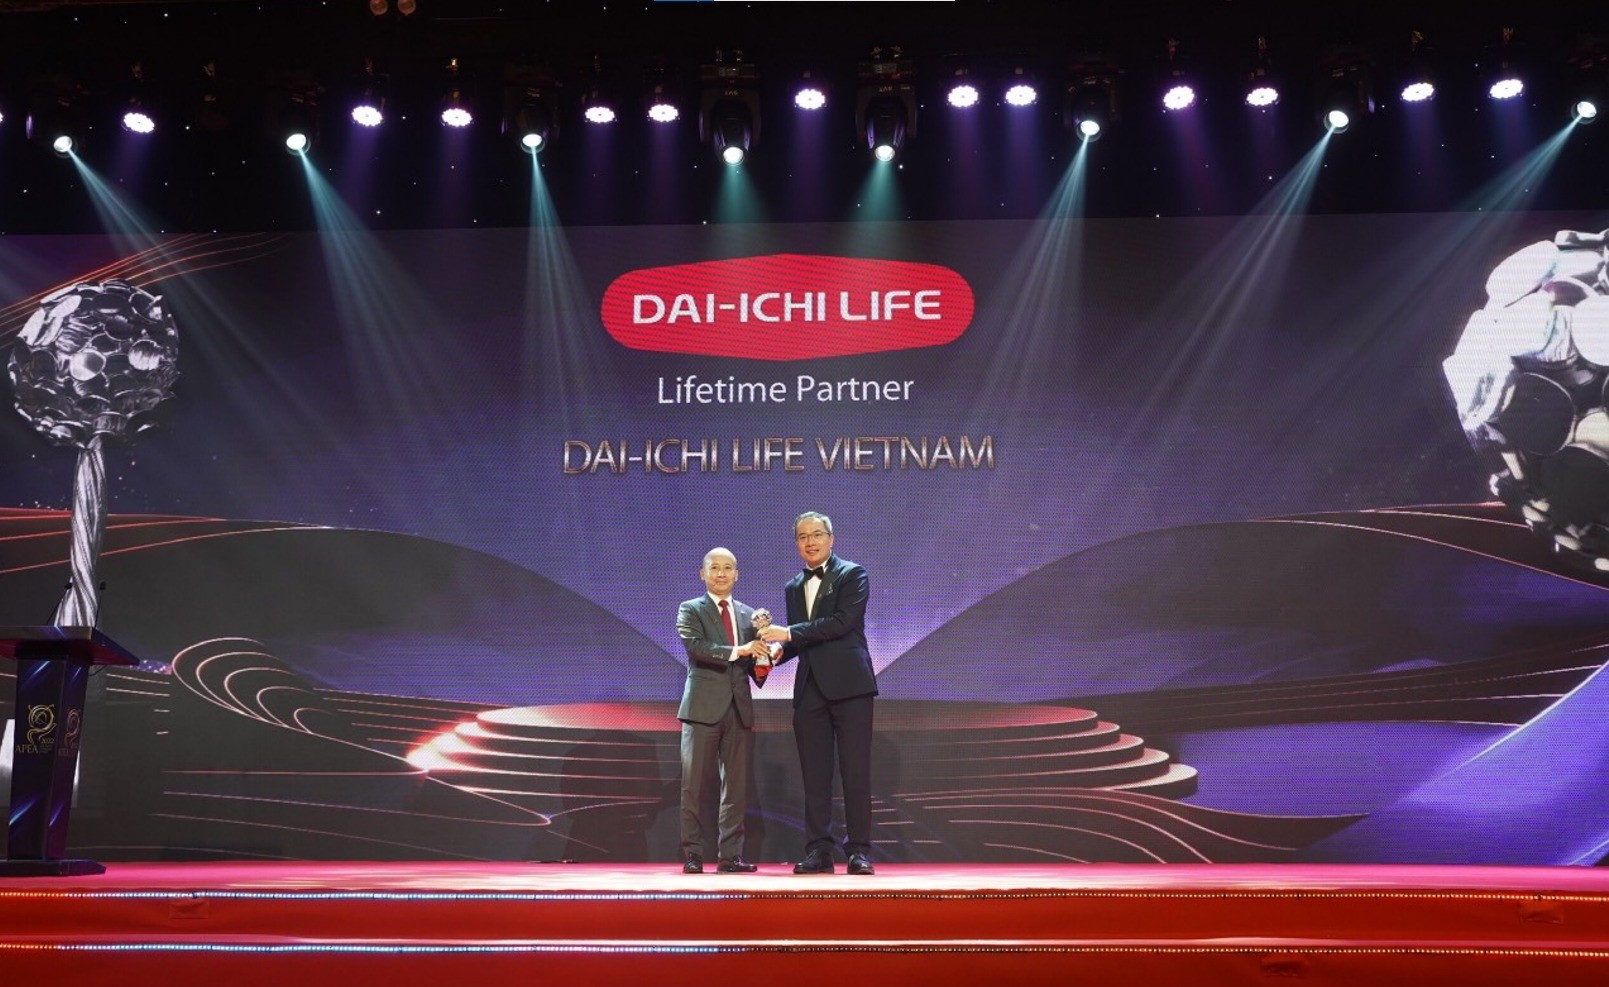 Ông Lưu Anh Tuấn - Phó Tổng Giám đốc Tài chính Dai-ichi Life Việt Nam, nhận giải thưởng "Thương hiệu truyền cảm hứng" (Inspirational Brand Award).